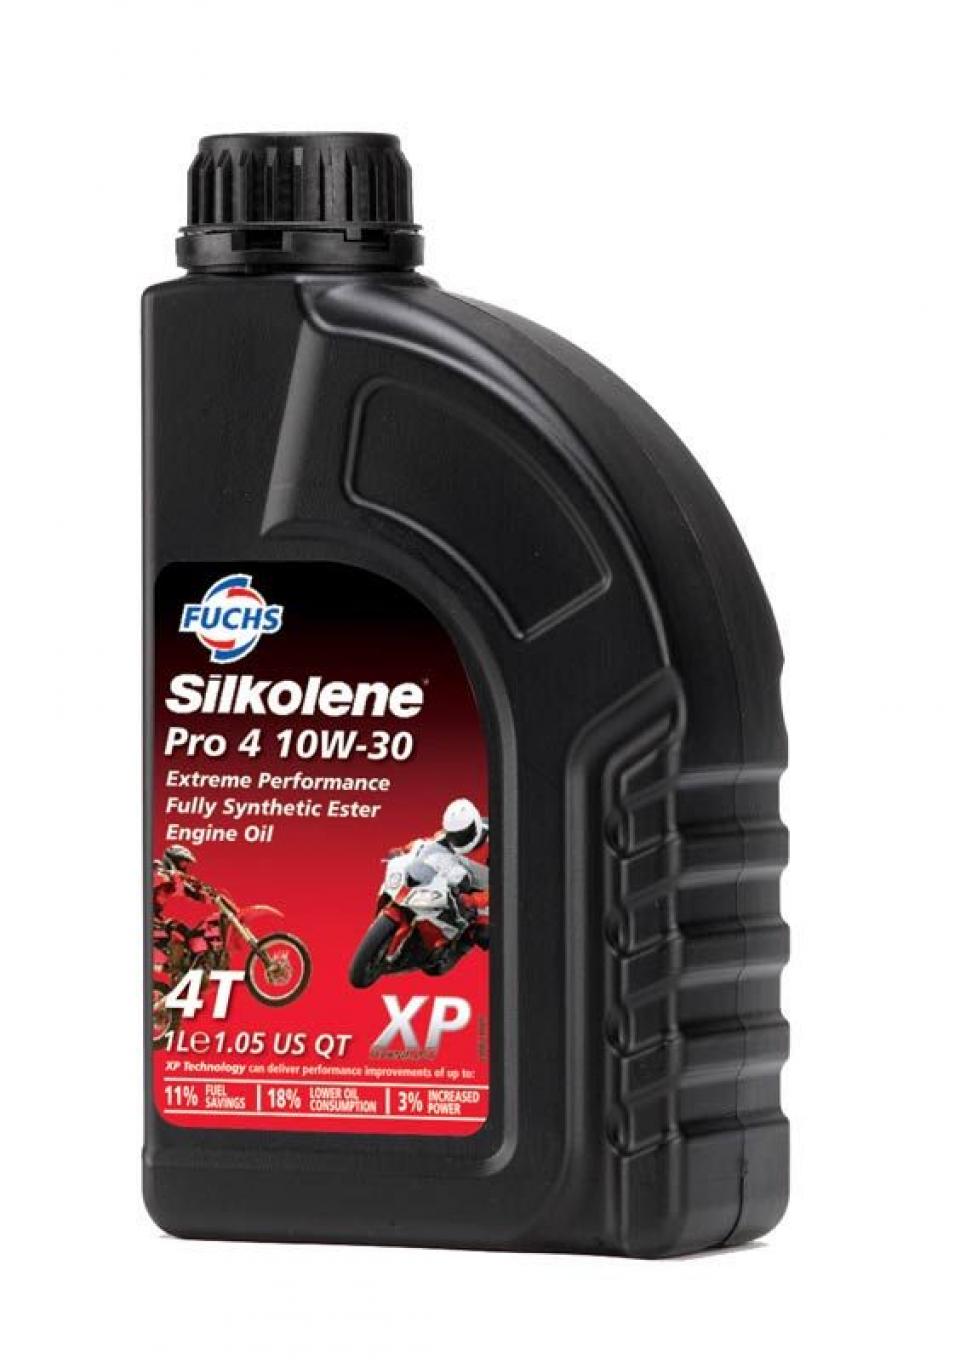 Lubrifiant et entretien Silkolene pour Scooter Honda 125 Nss Forza Sans Abs 2015 à 2016 Neuf